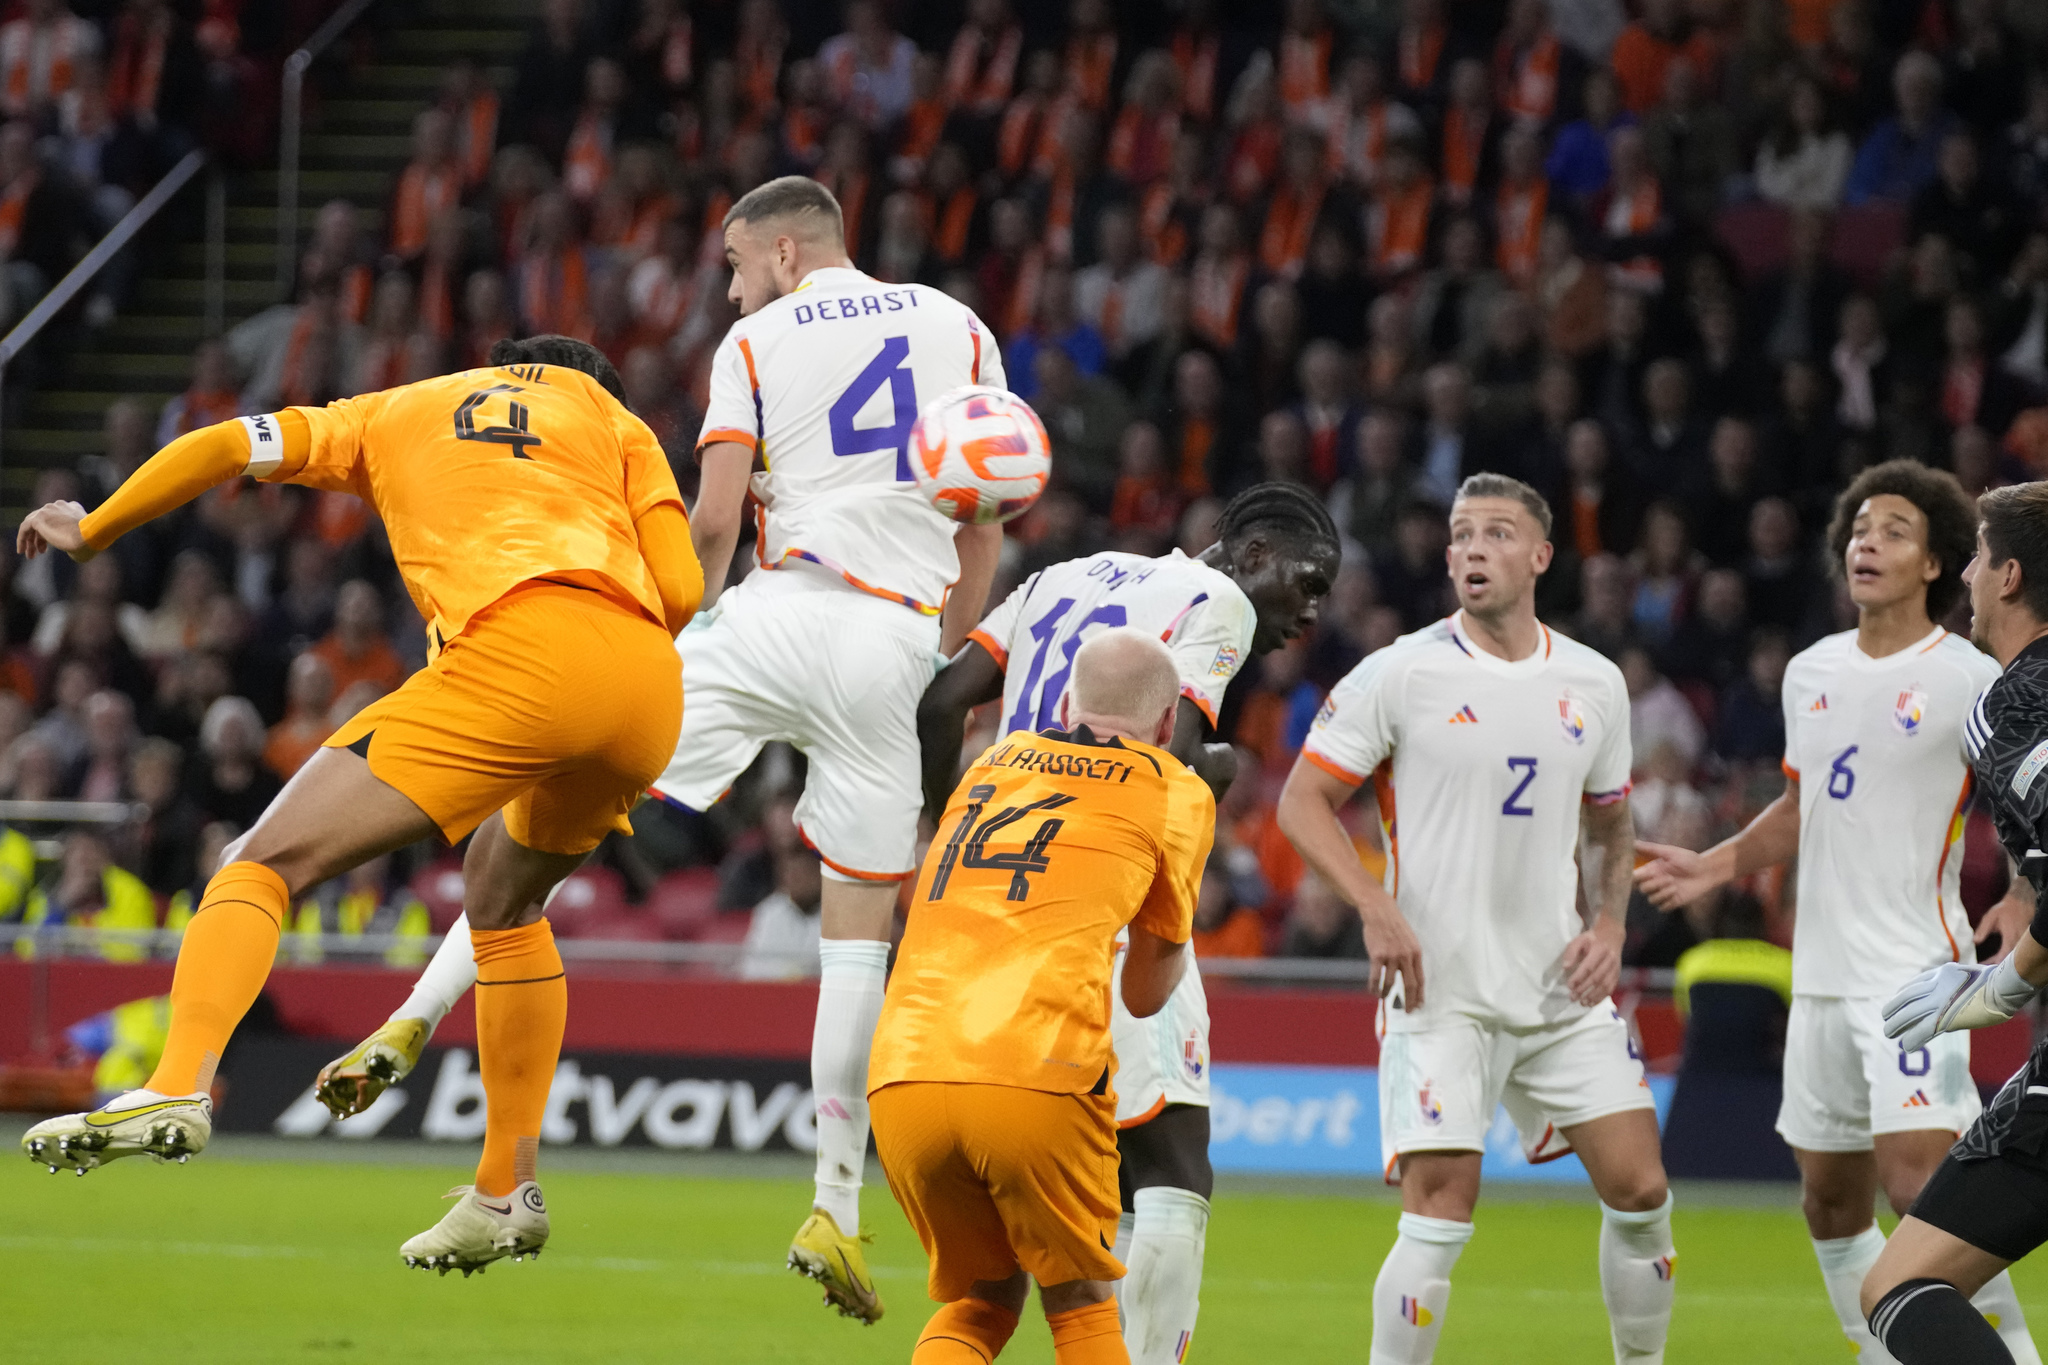 Netherlands' Virgil van Dijk scores